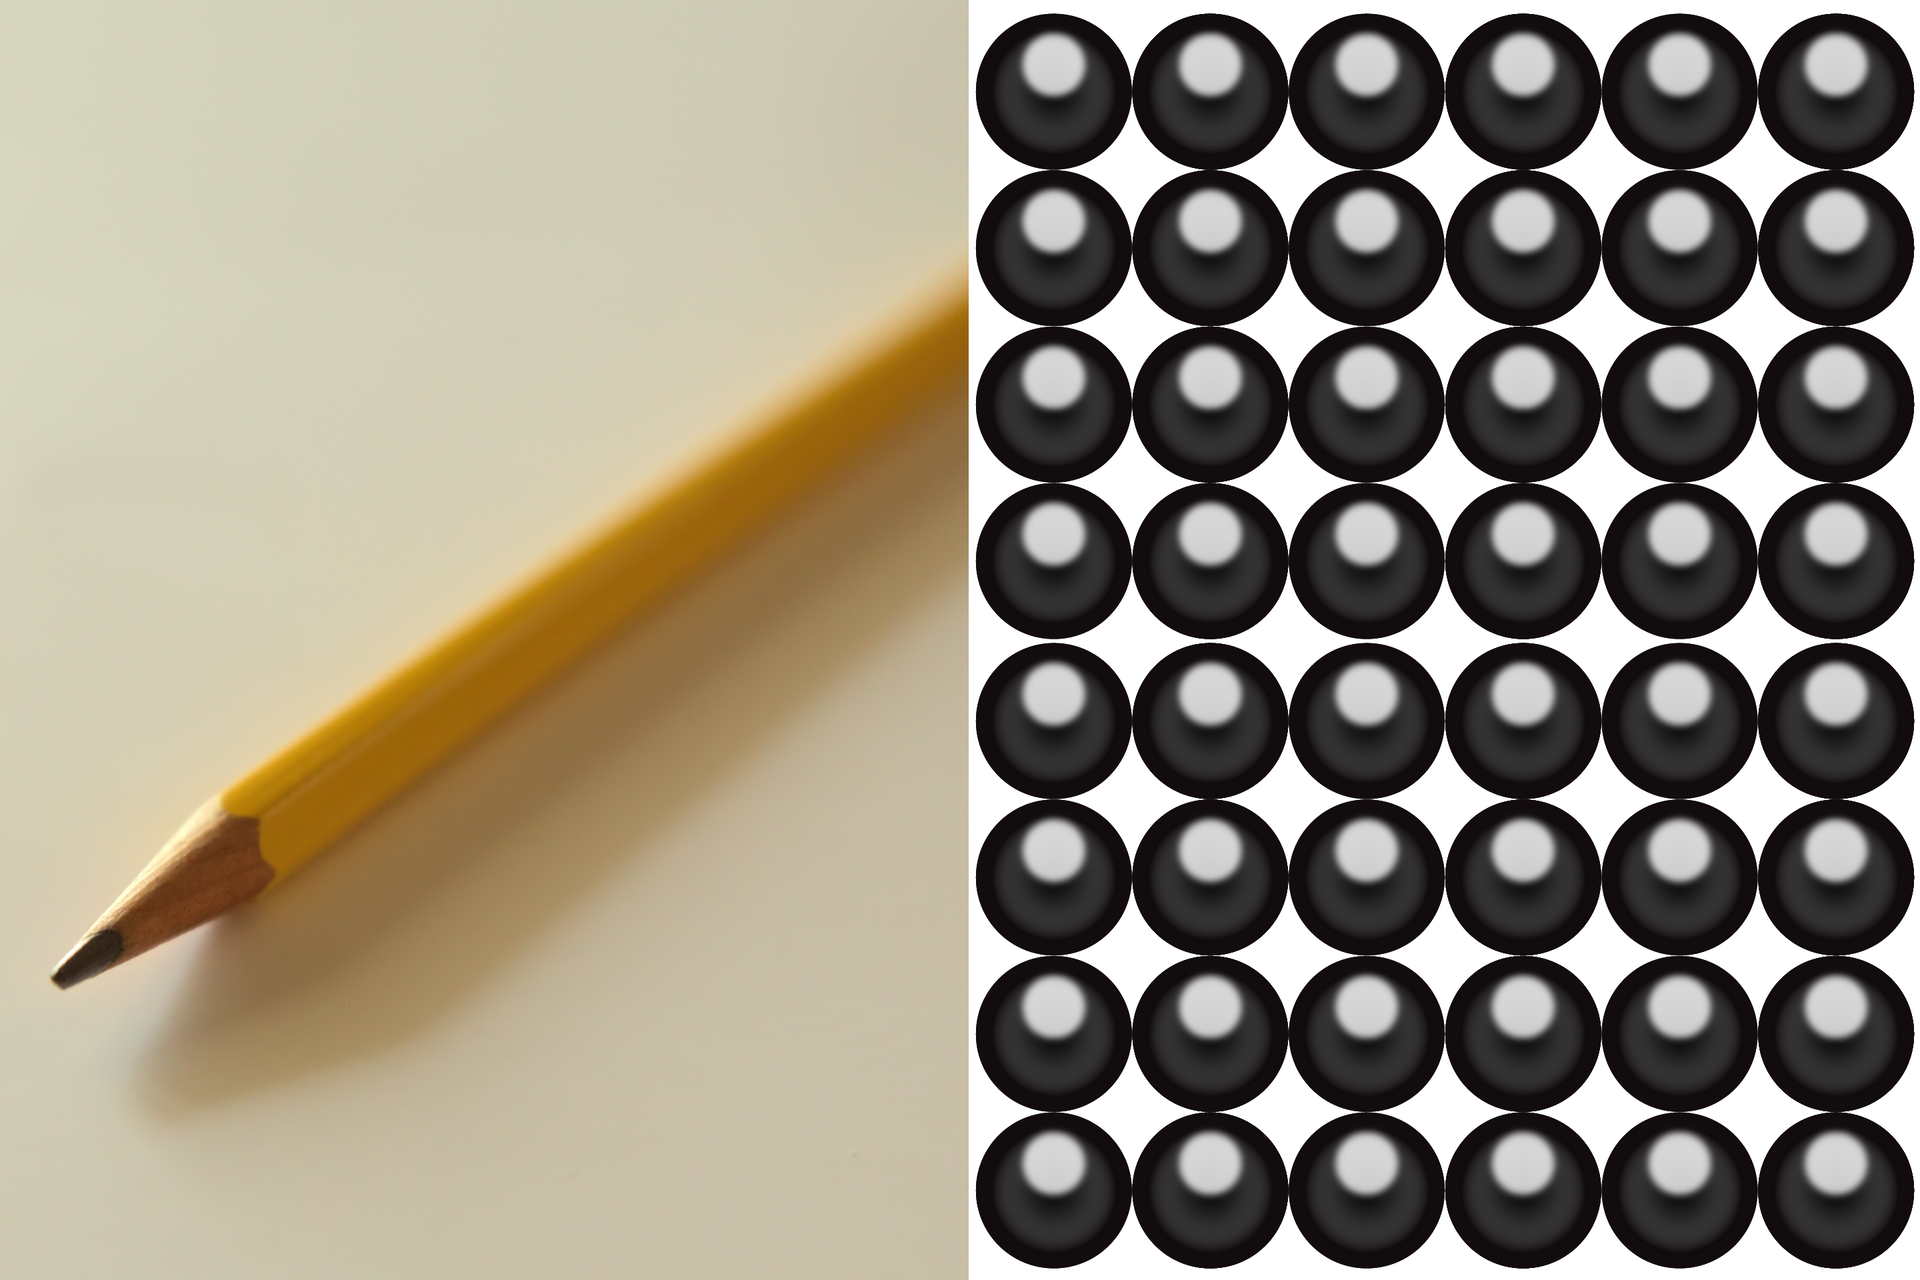 Na drugiej ilustracji widoczny jest ołówek z grafitowym rysikiem, a obok – czarne atomy węgla ułożone w równomiernych rzędach.